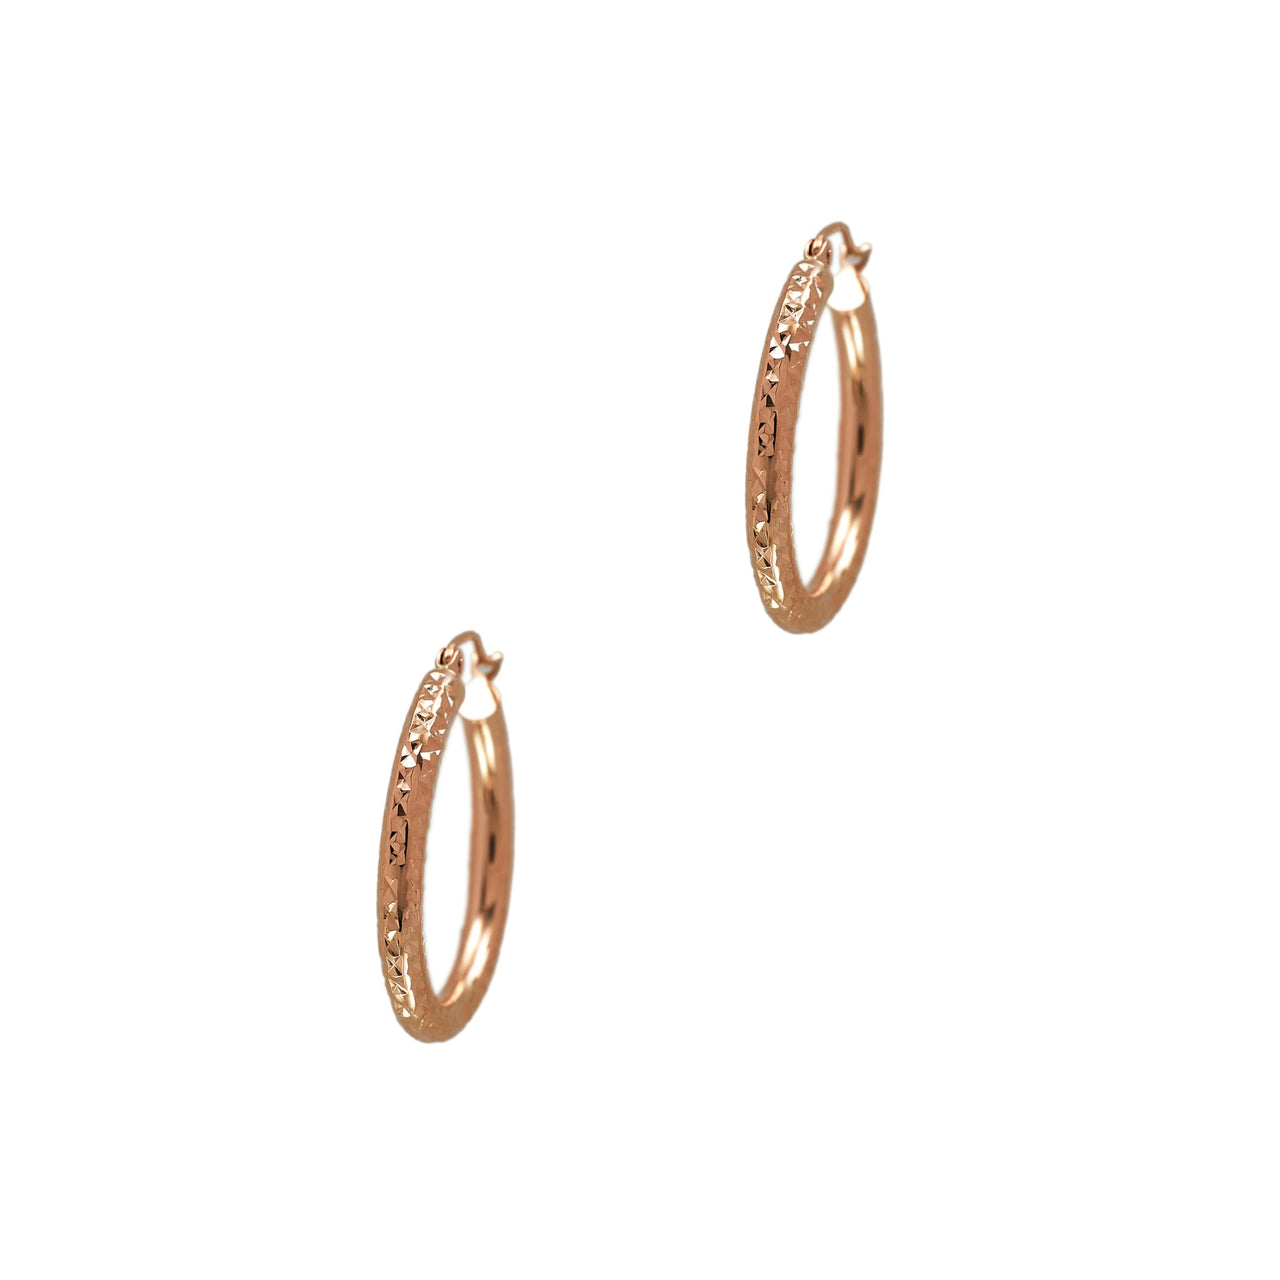 Pre-Owned 14ct Gold Diamond Cut Creole Hoop Earrings